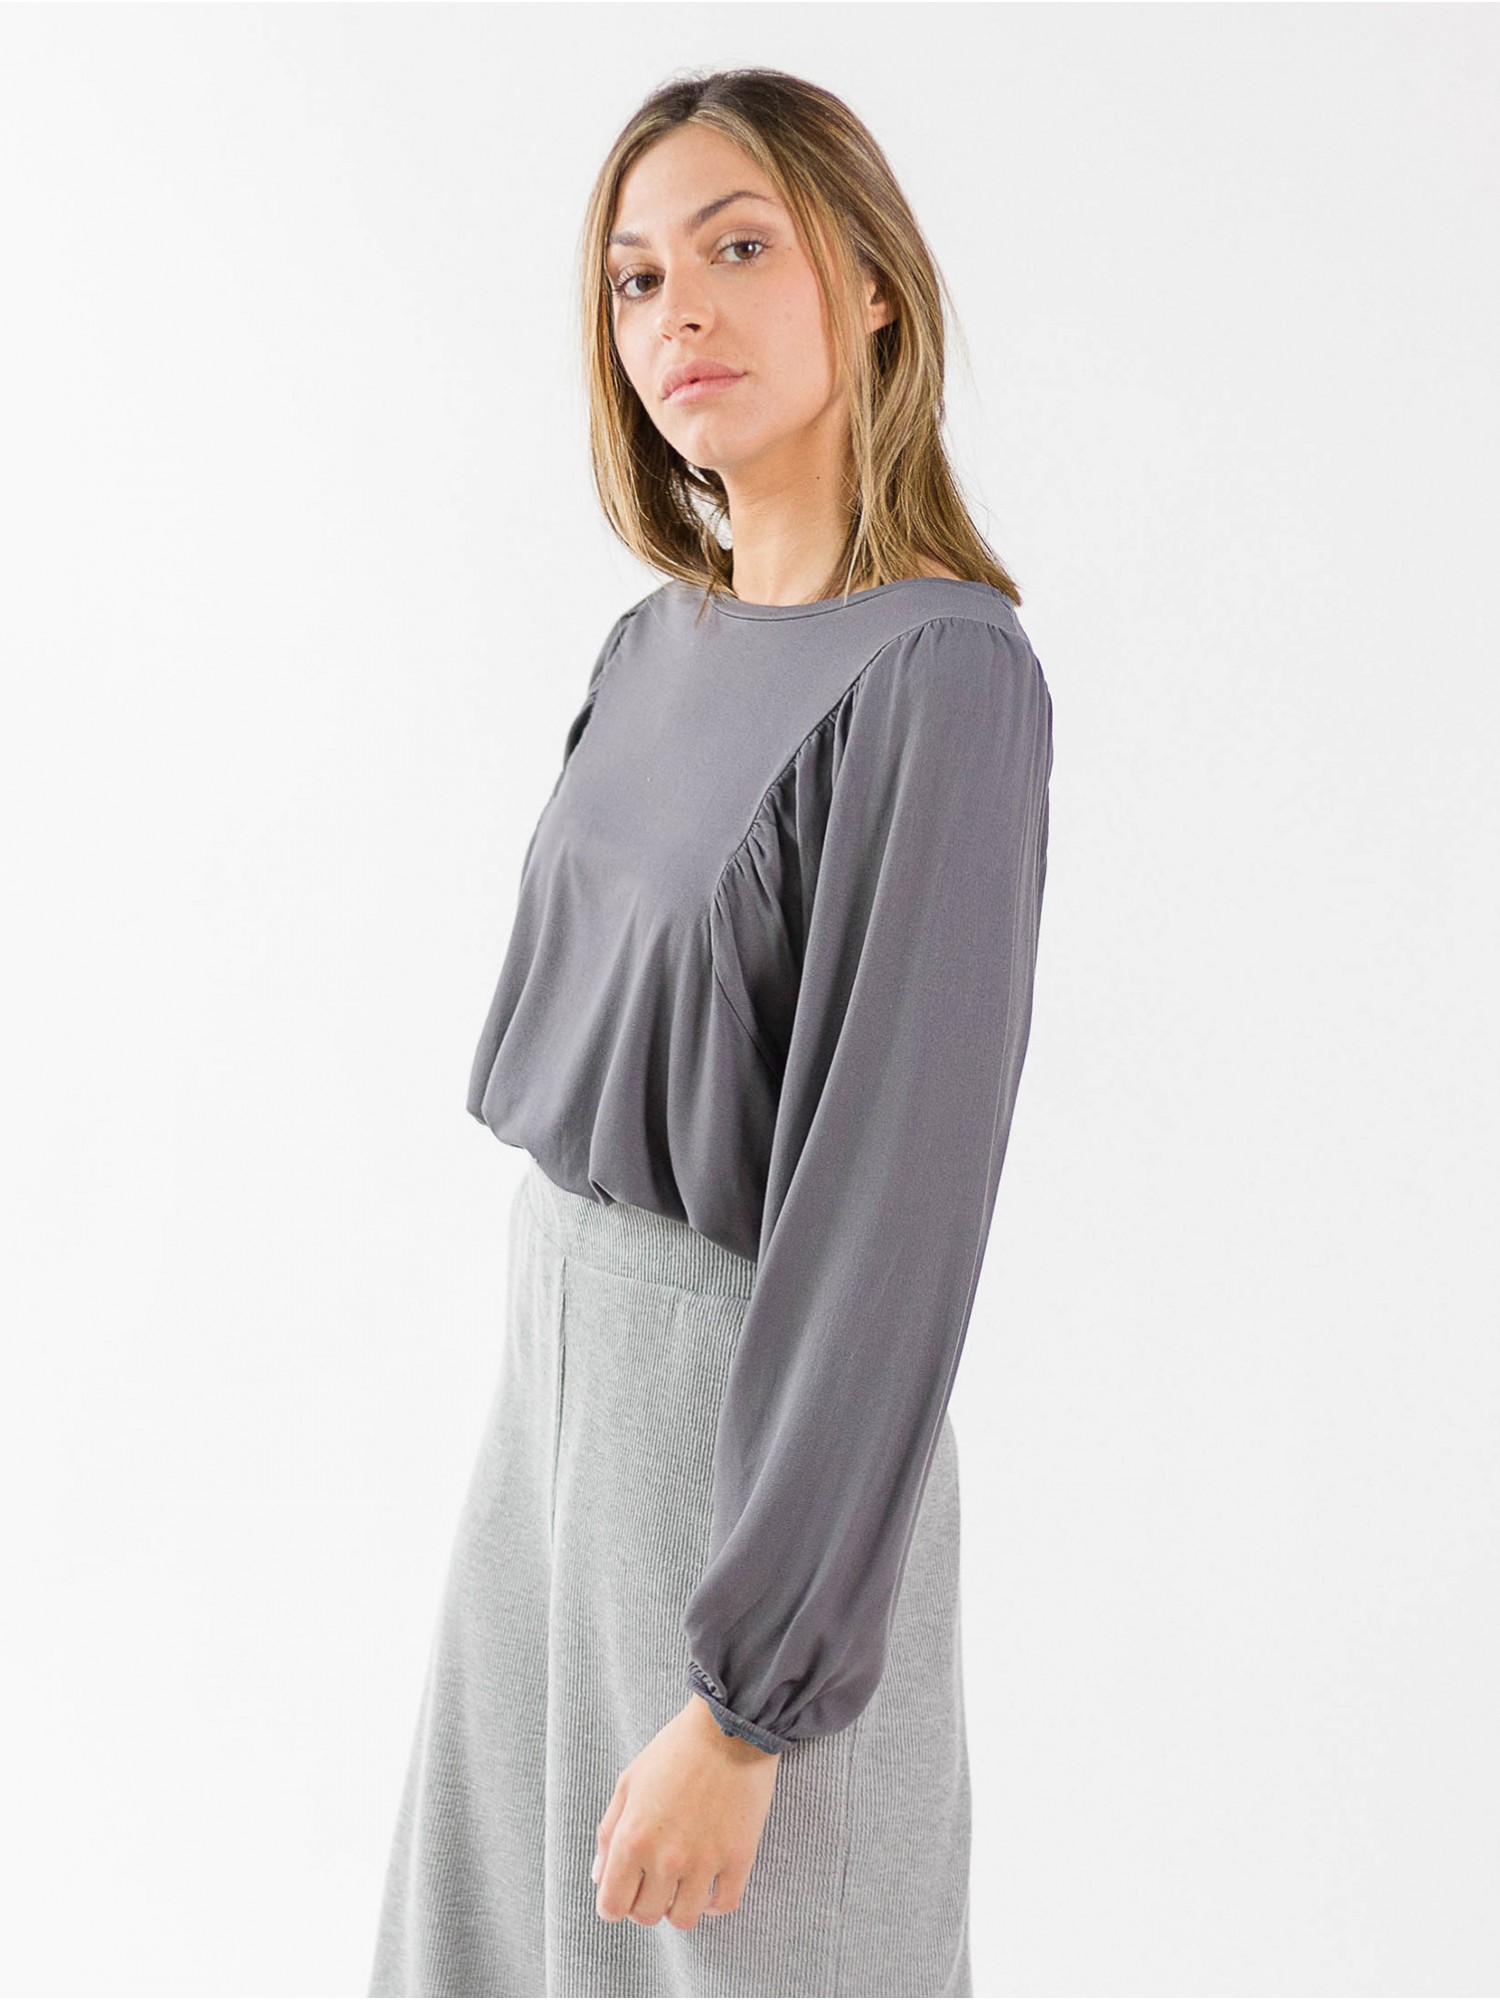 Camiseta Voilà de PAN Producto Básico en candelascloset. Tejido de viscosa gris, manga larga con puños elásticos para mujer.